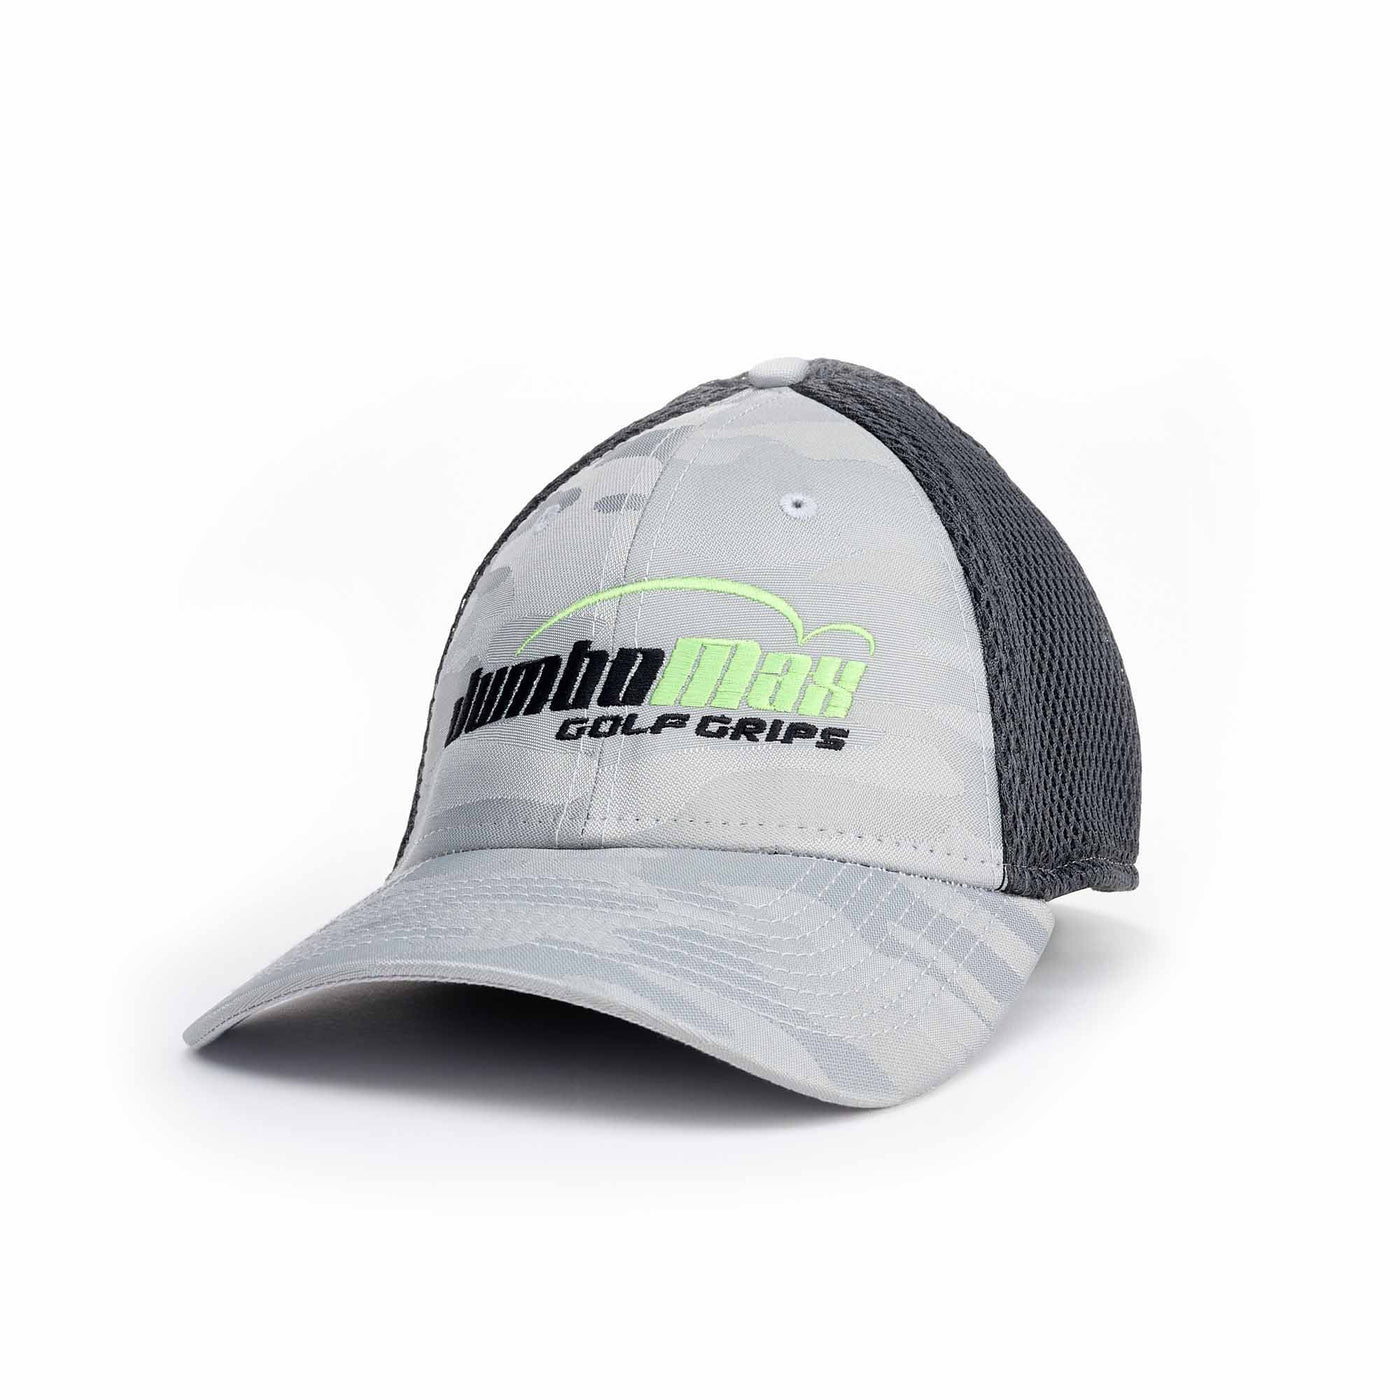 JumboMax New Era® Fitted Hat